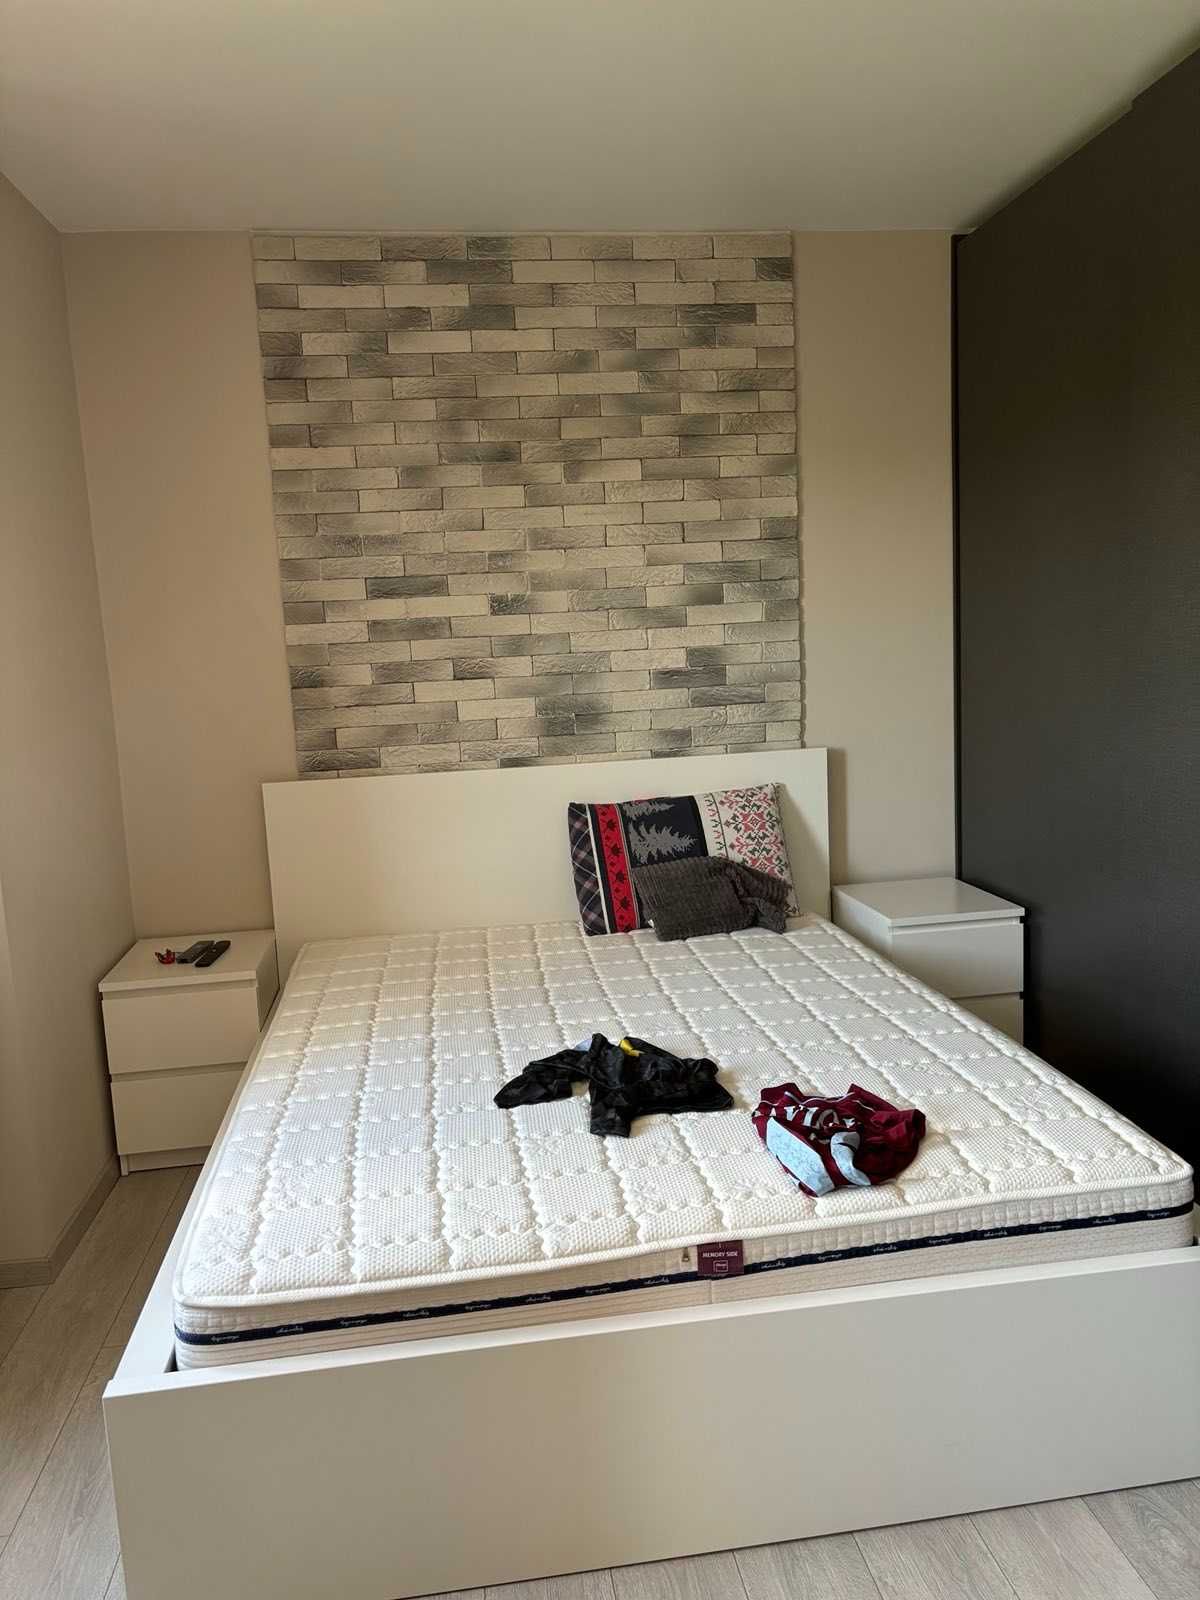 Спалня комплект от Ikea 160-200 Легло MALM с матрак и 2 нощни шкафчета